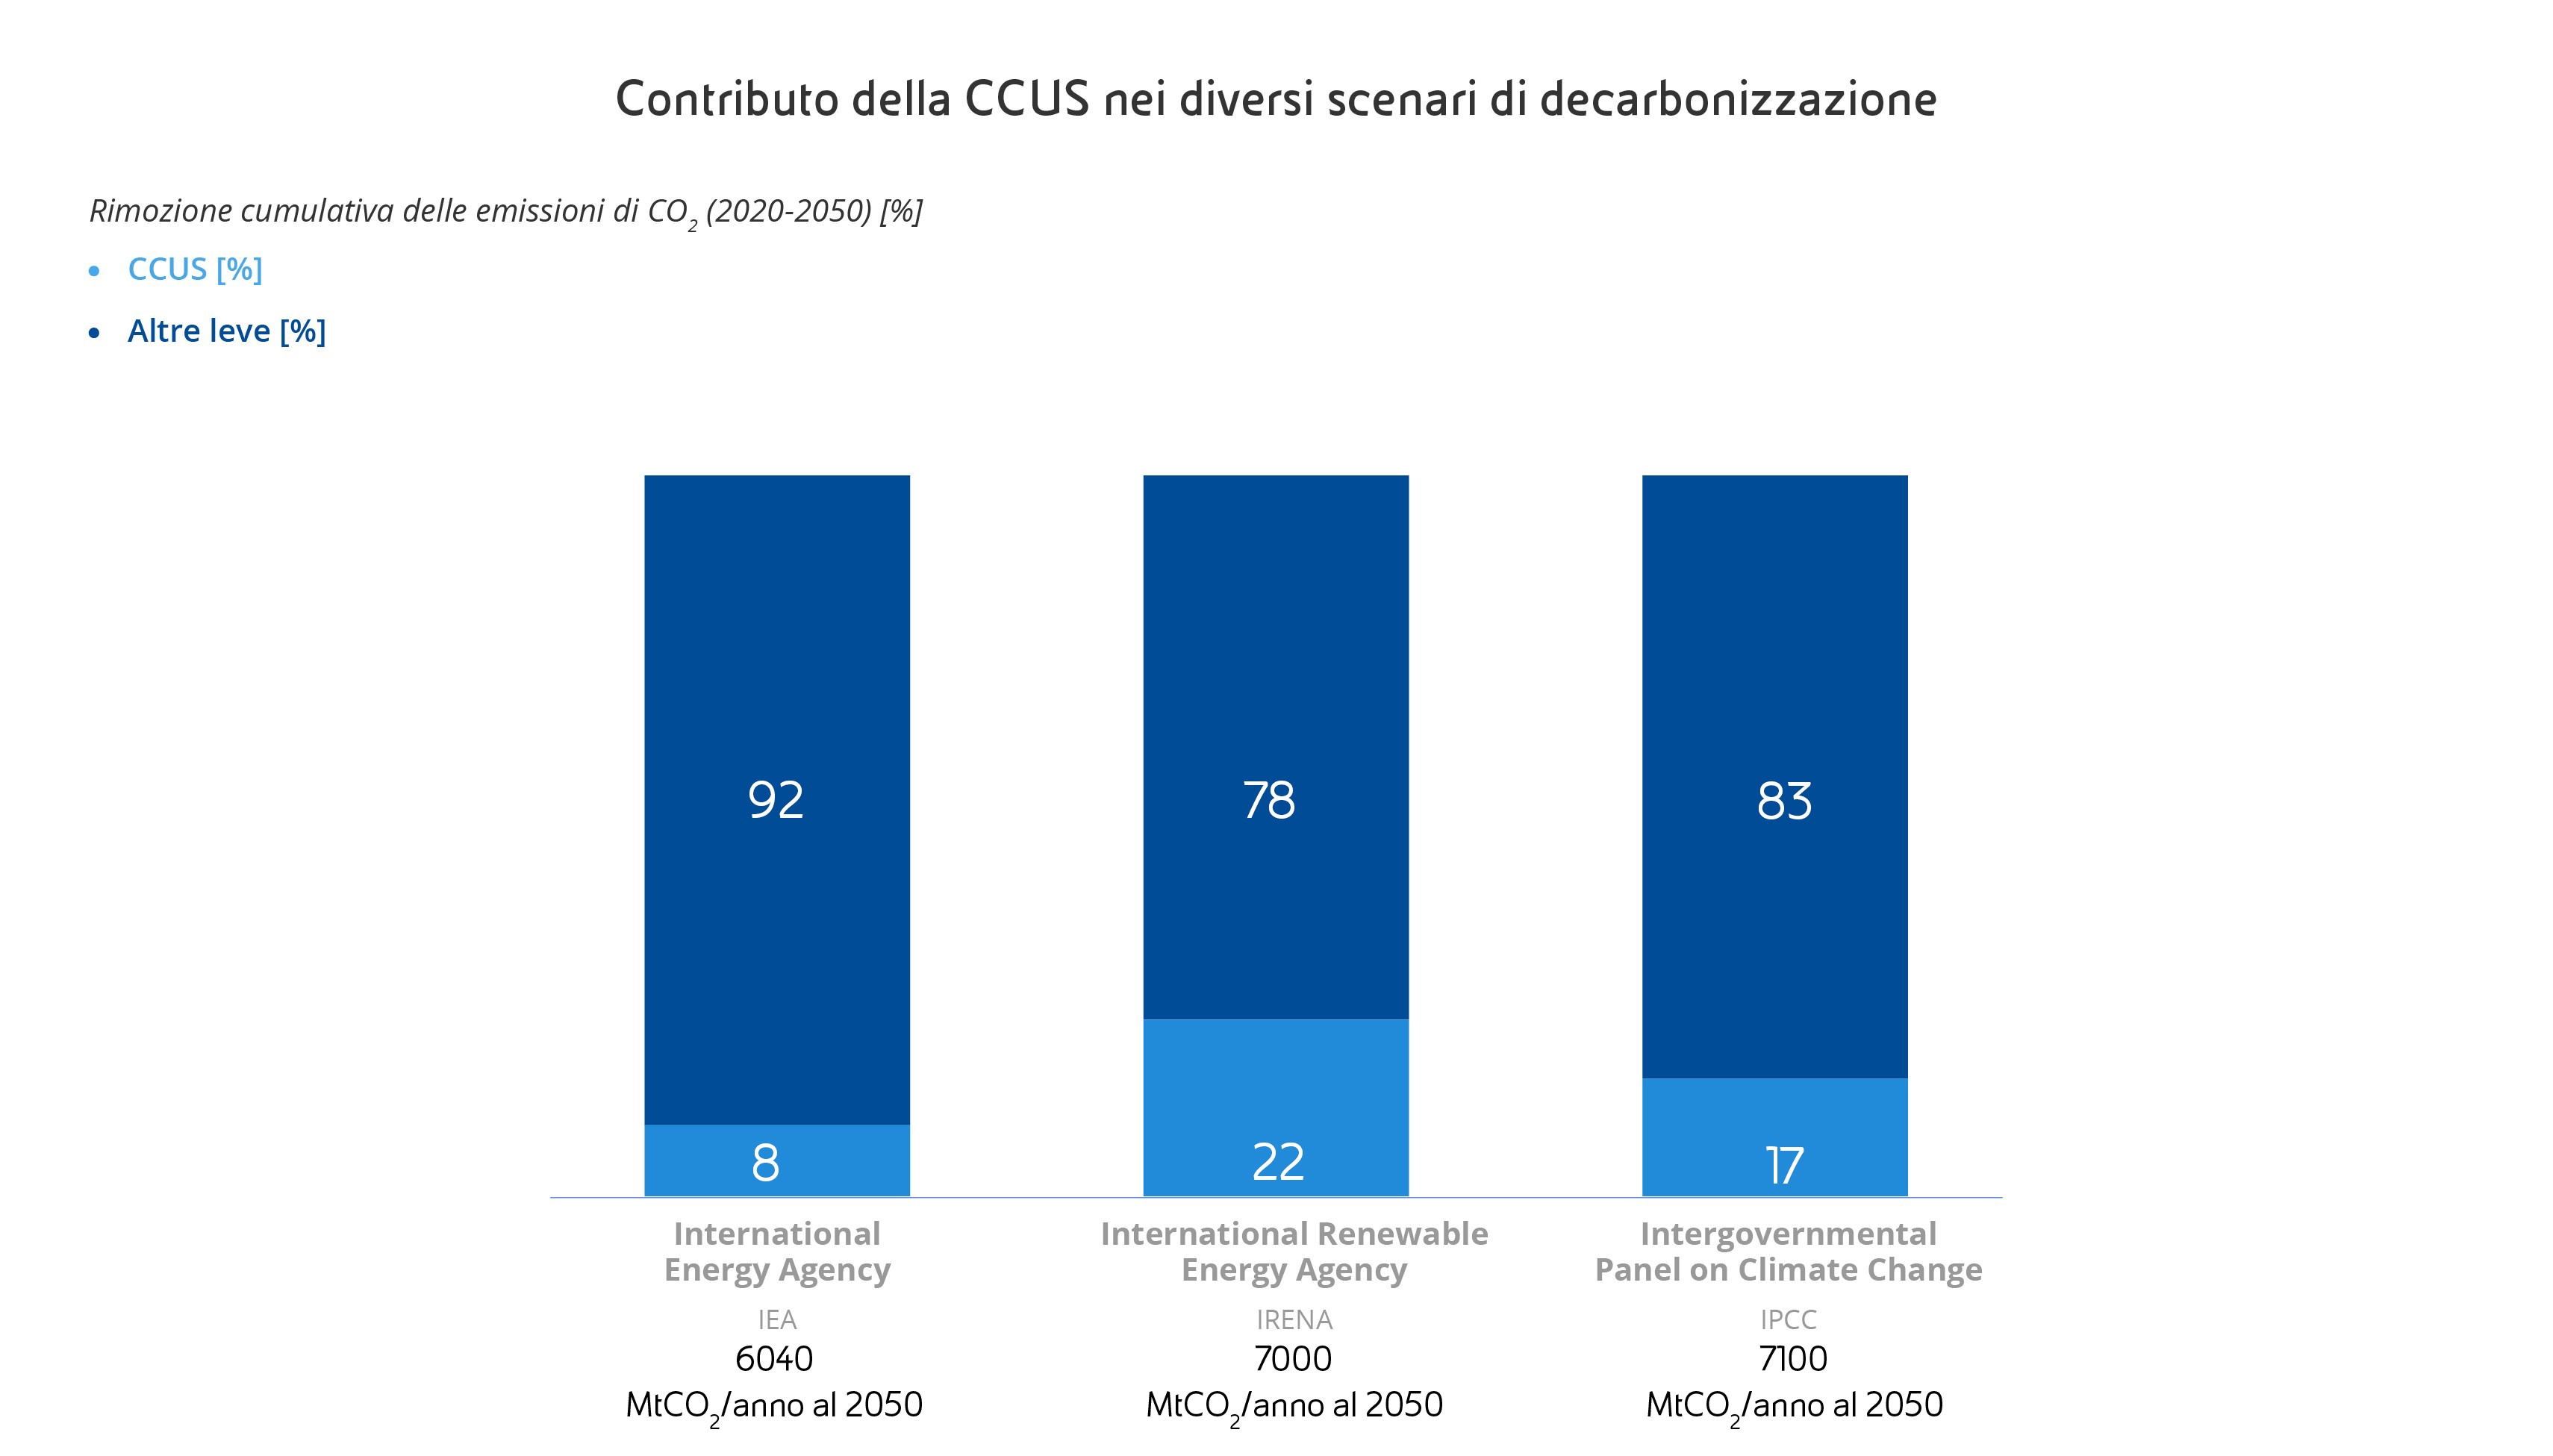 ccs-strategia-decarbonizzazione-infografica3-desk-ita.jpg